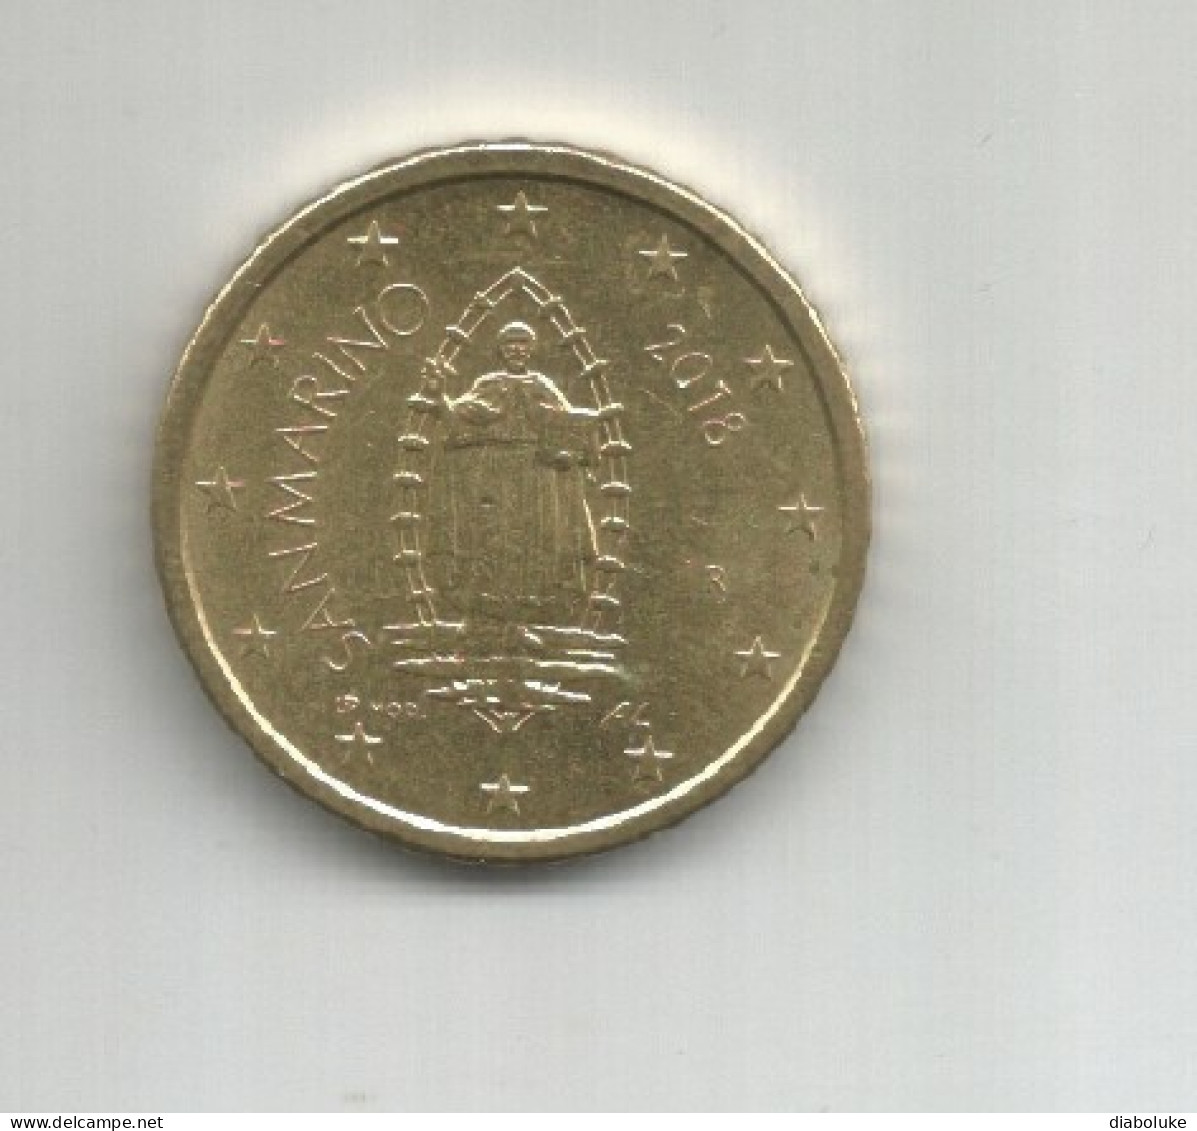 (SAN MARINO) 2018, 50 CENT - Circulated Coin - San Marino